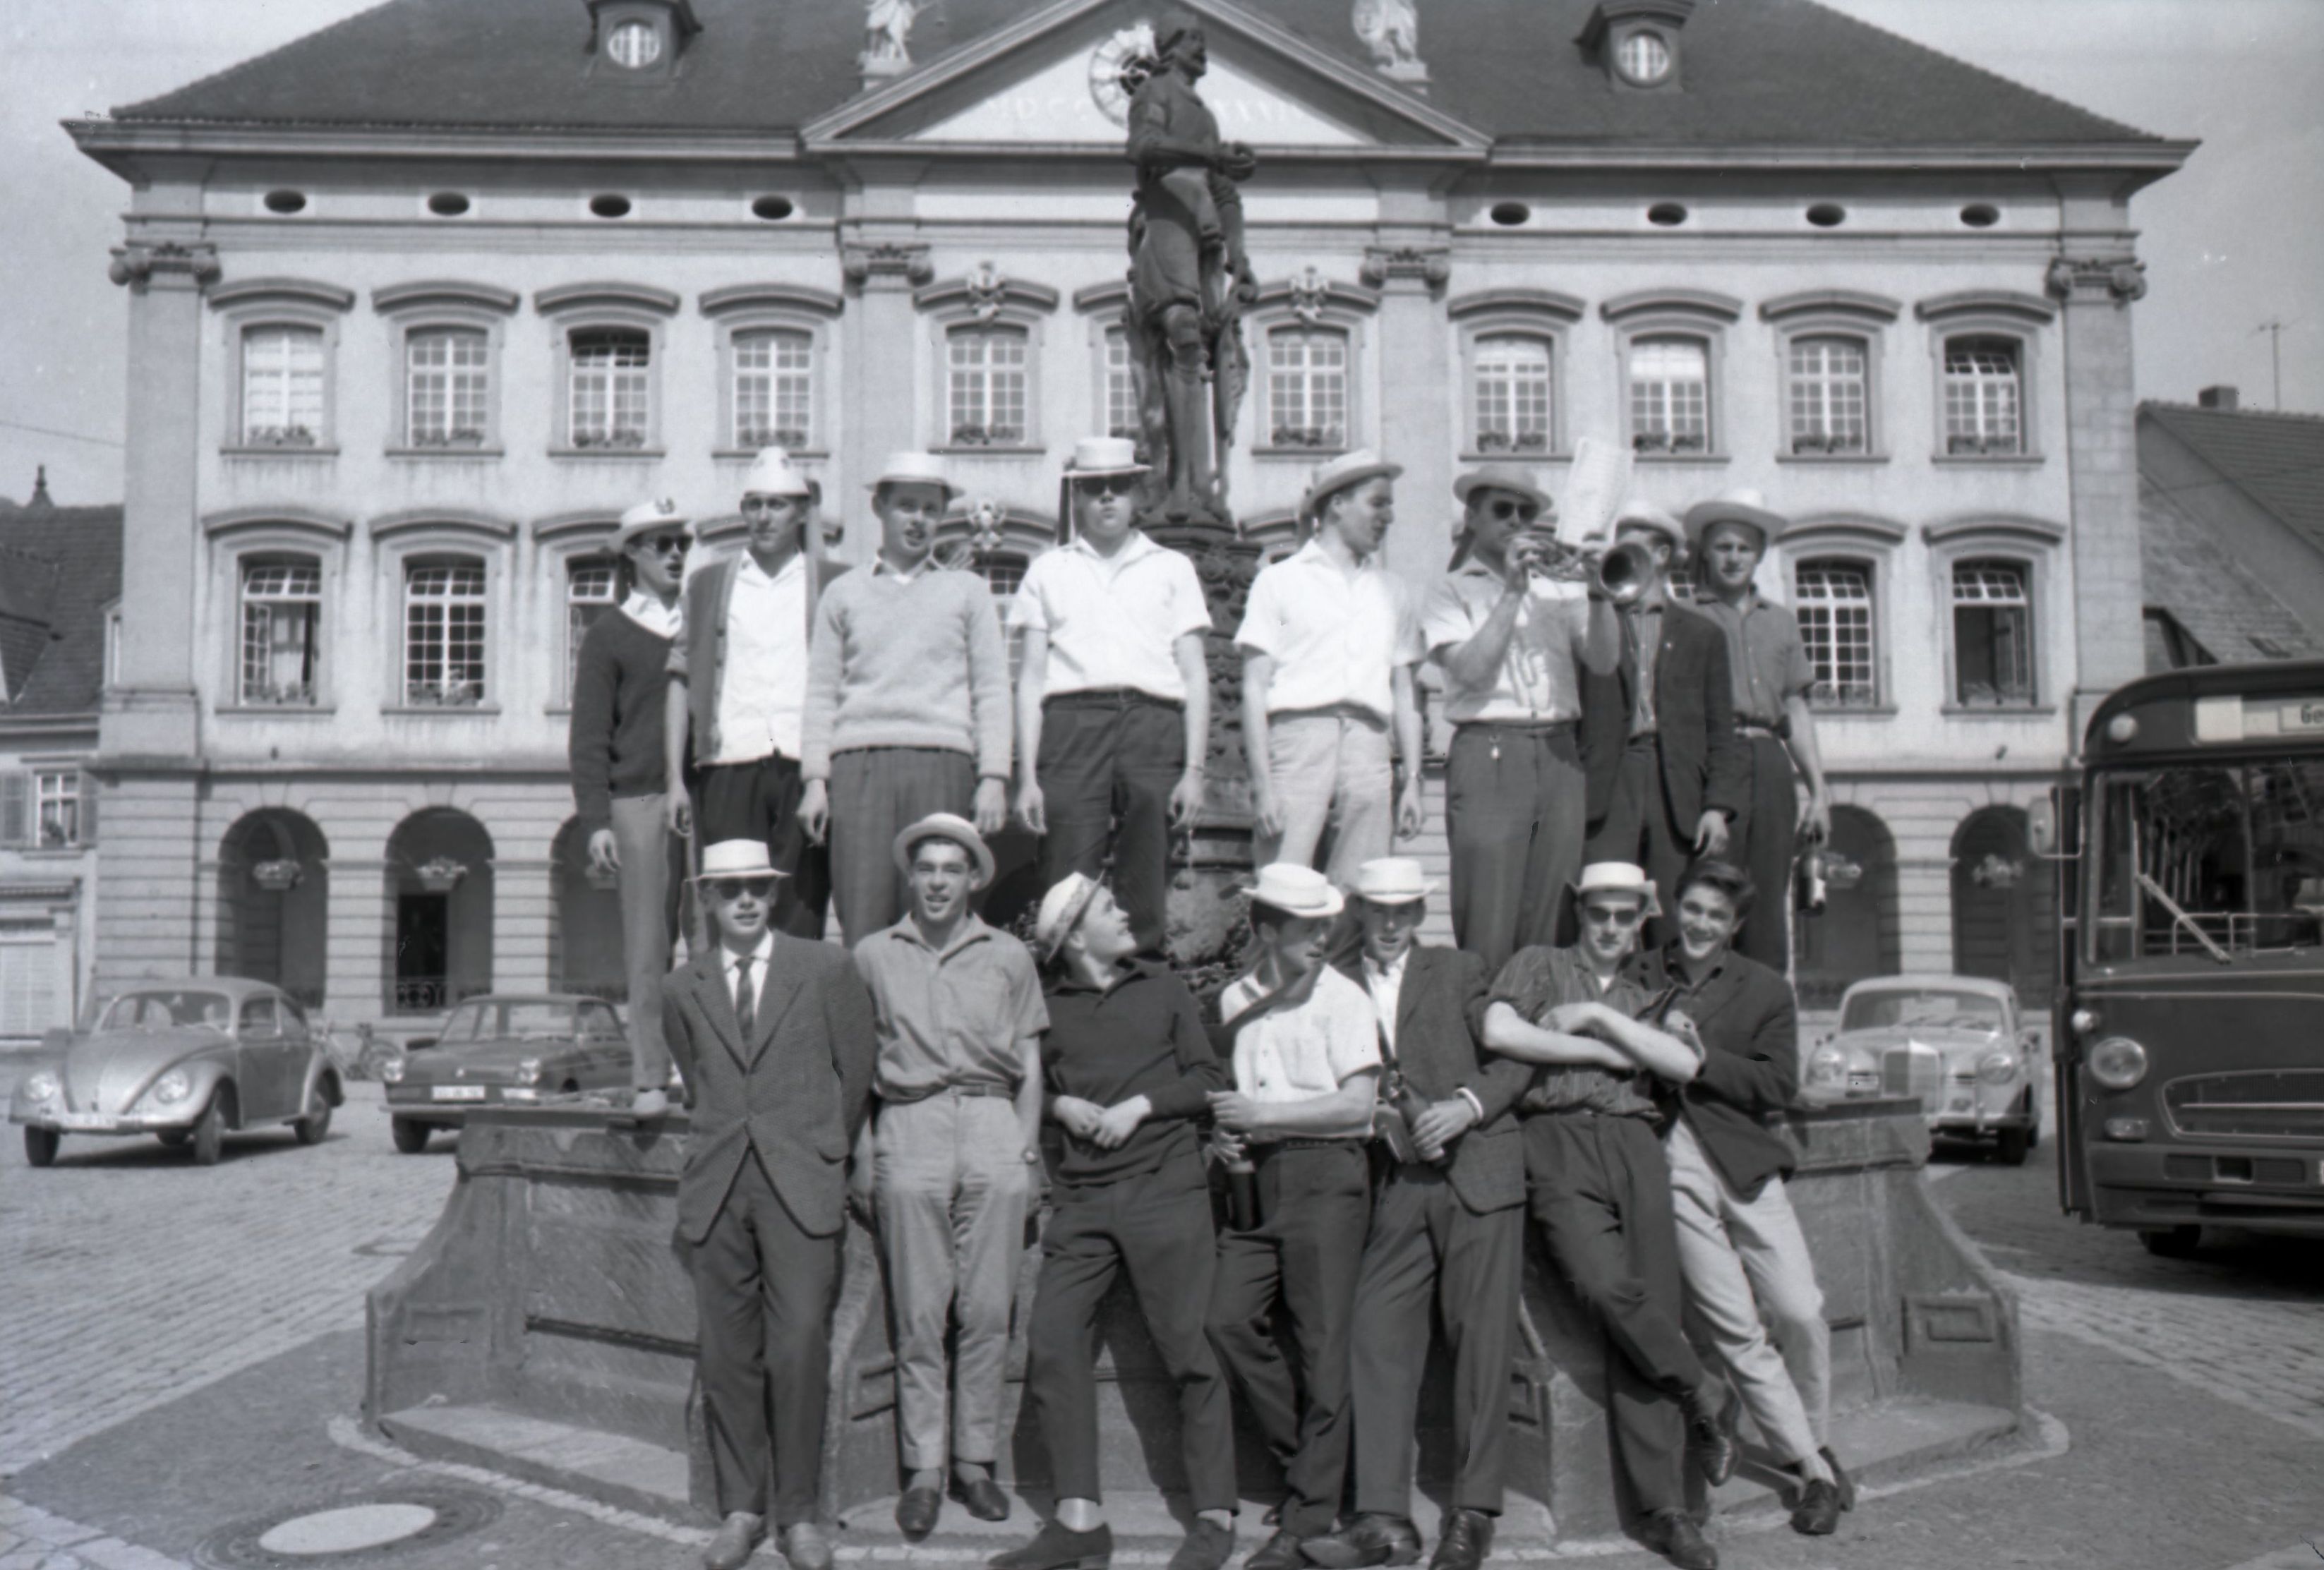 Gruppenbild der Rekruten vor und auf dem Stadtbrunnen